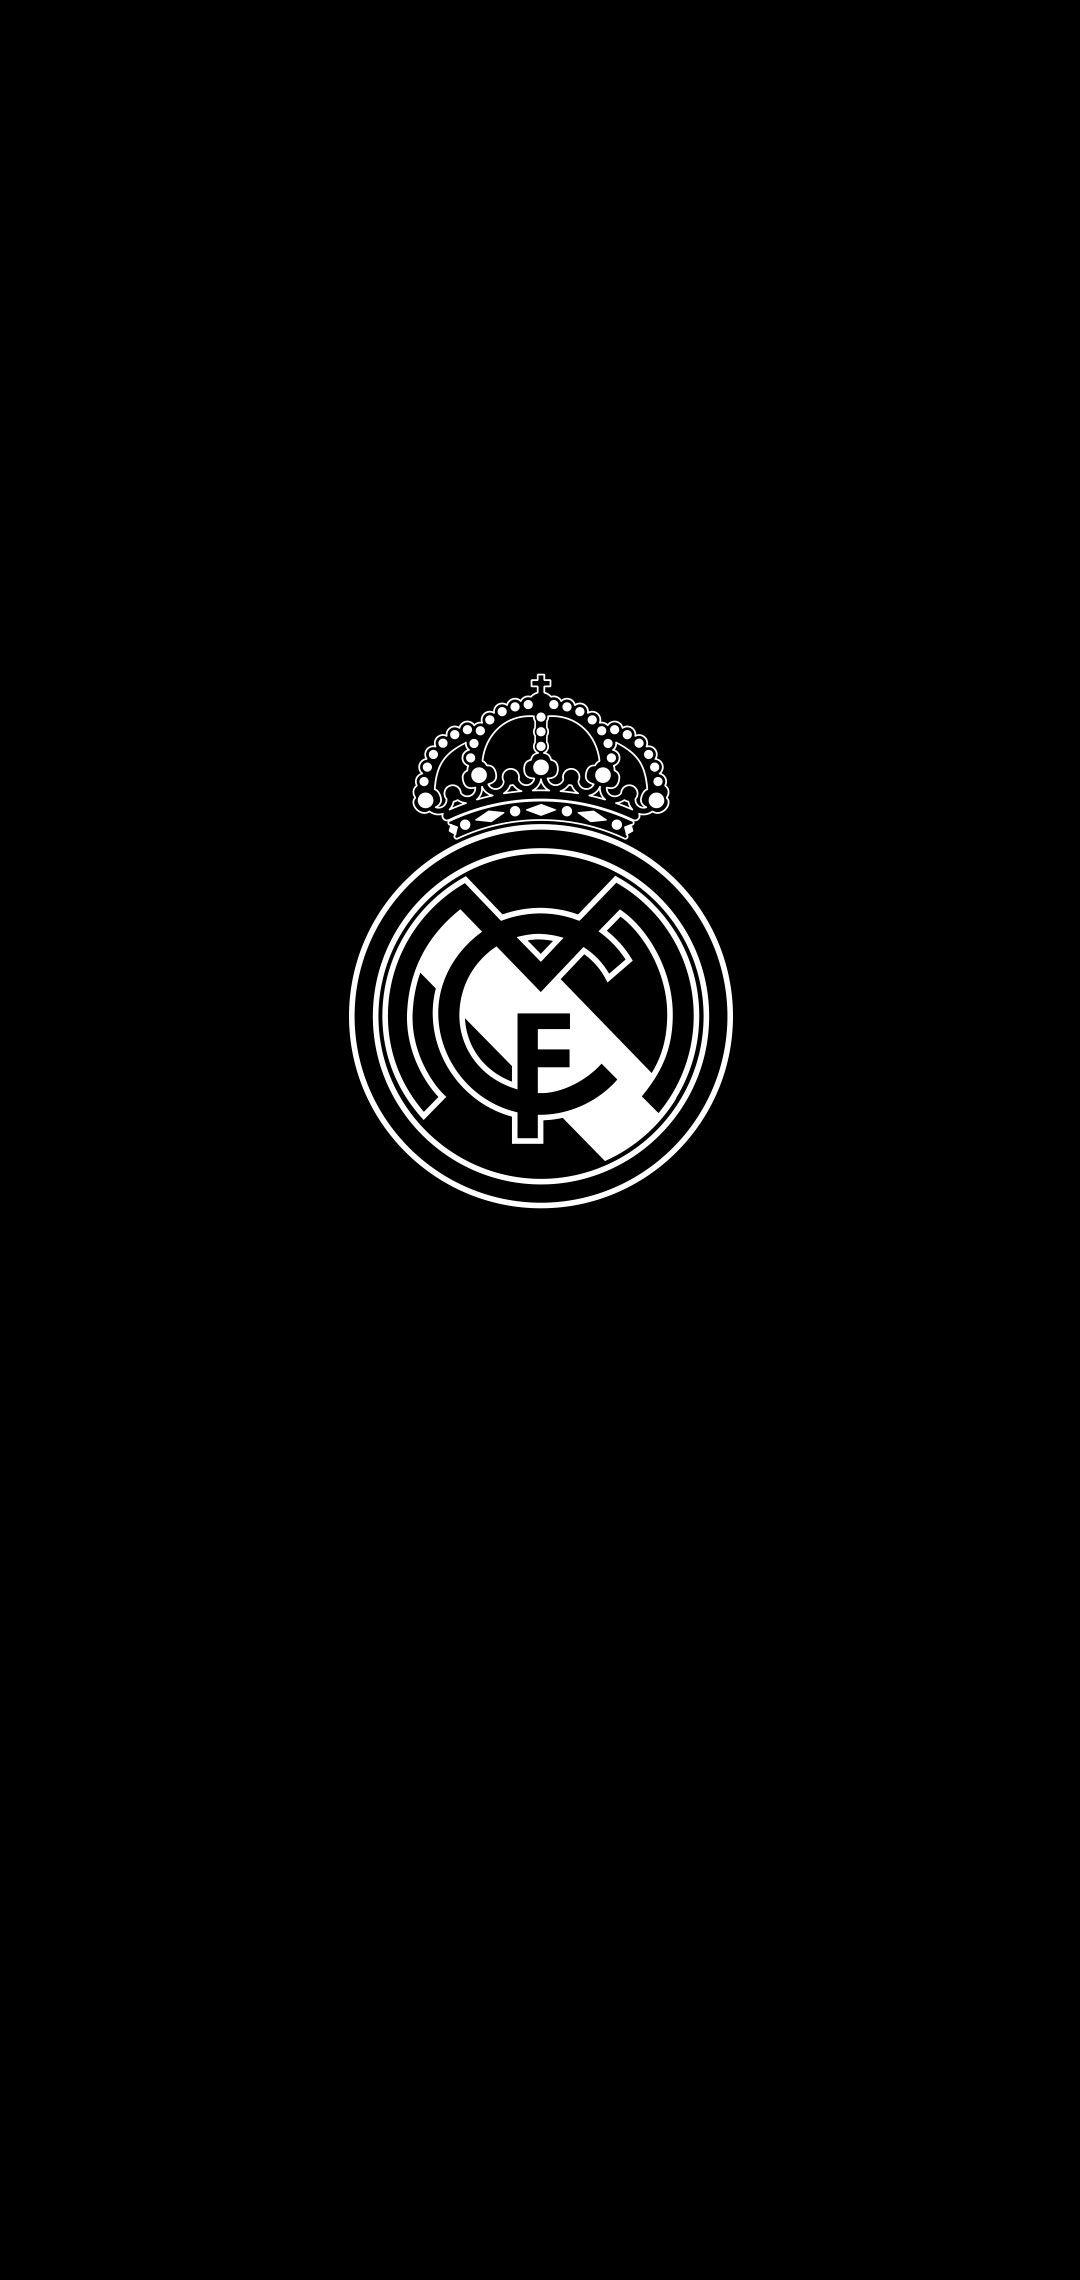 Real Madrid Wallpaper. Real madrid wallpaper, Real madrid logo wallpaper, Real madrid logo